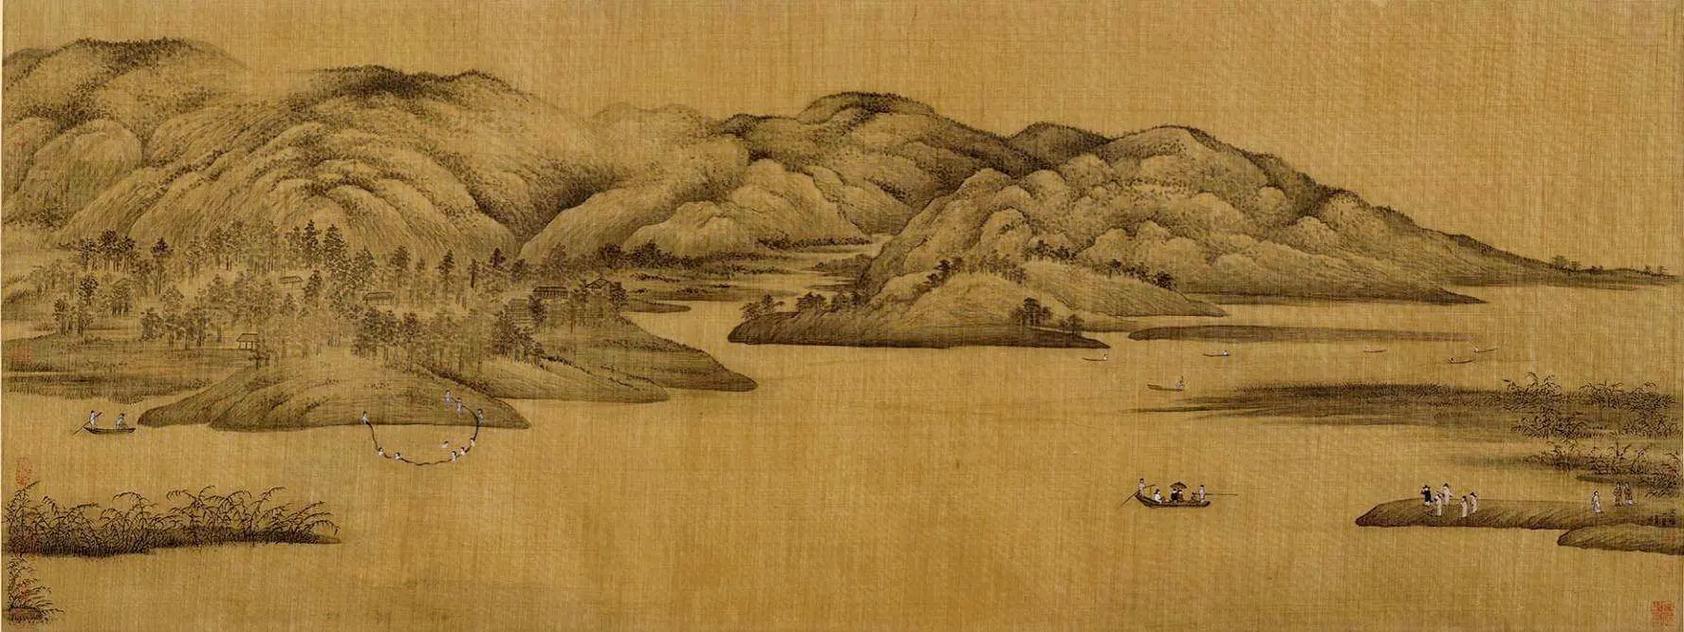 《潇湘图》是五代南唐董源创作的设色绢本山水画,该作品现收藏于 - 抖